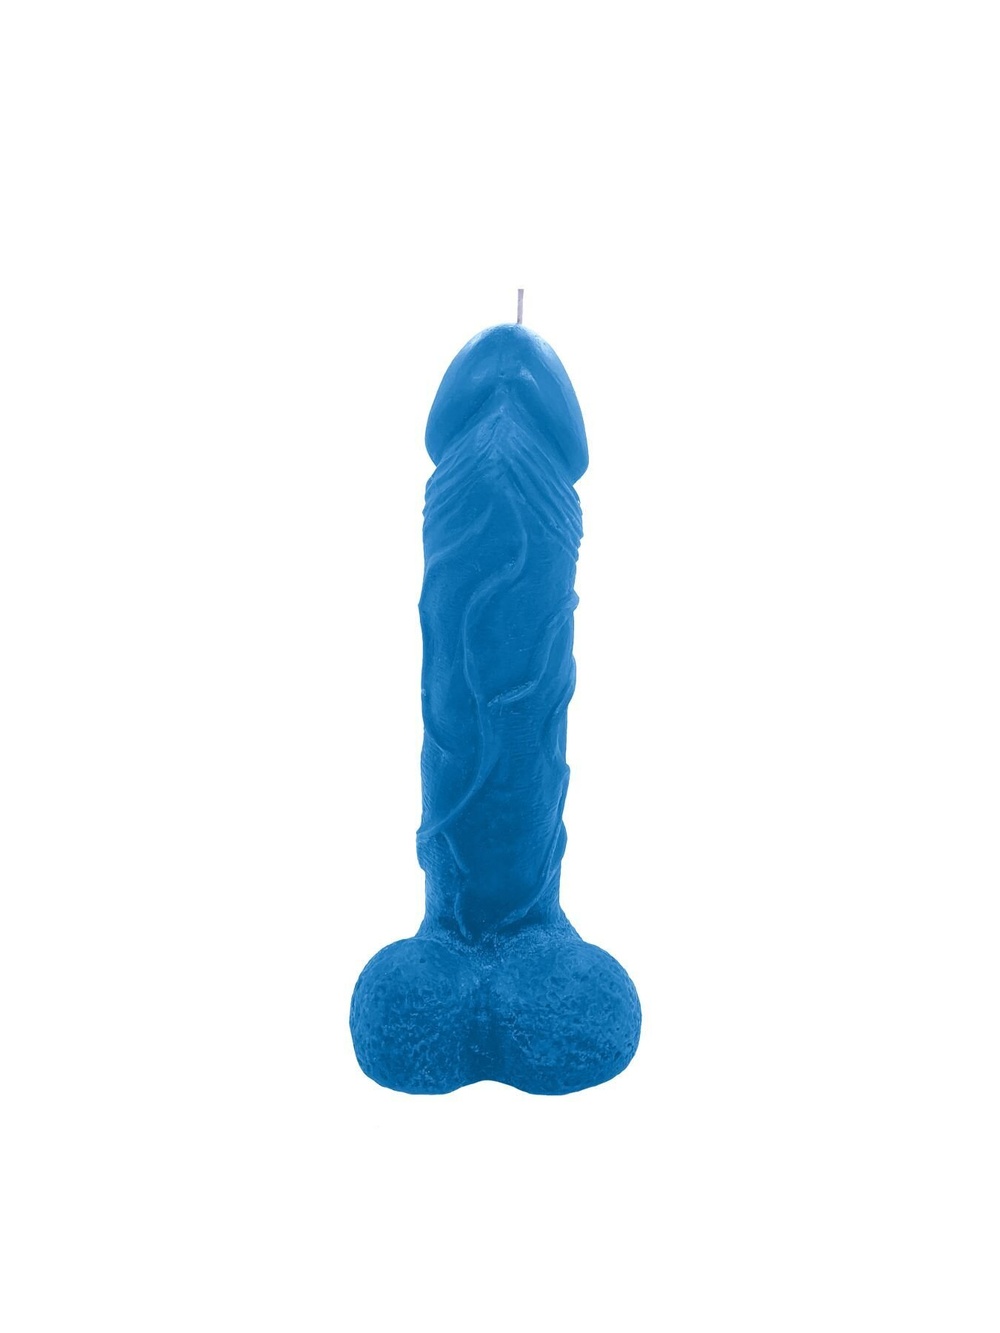 Свічка у вигляді члена Blue size L, для збудливої атмосфери фото